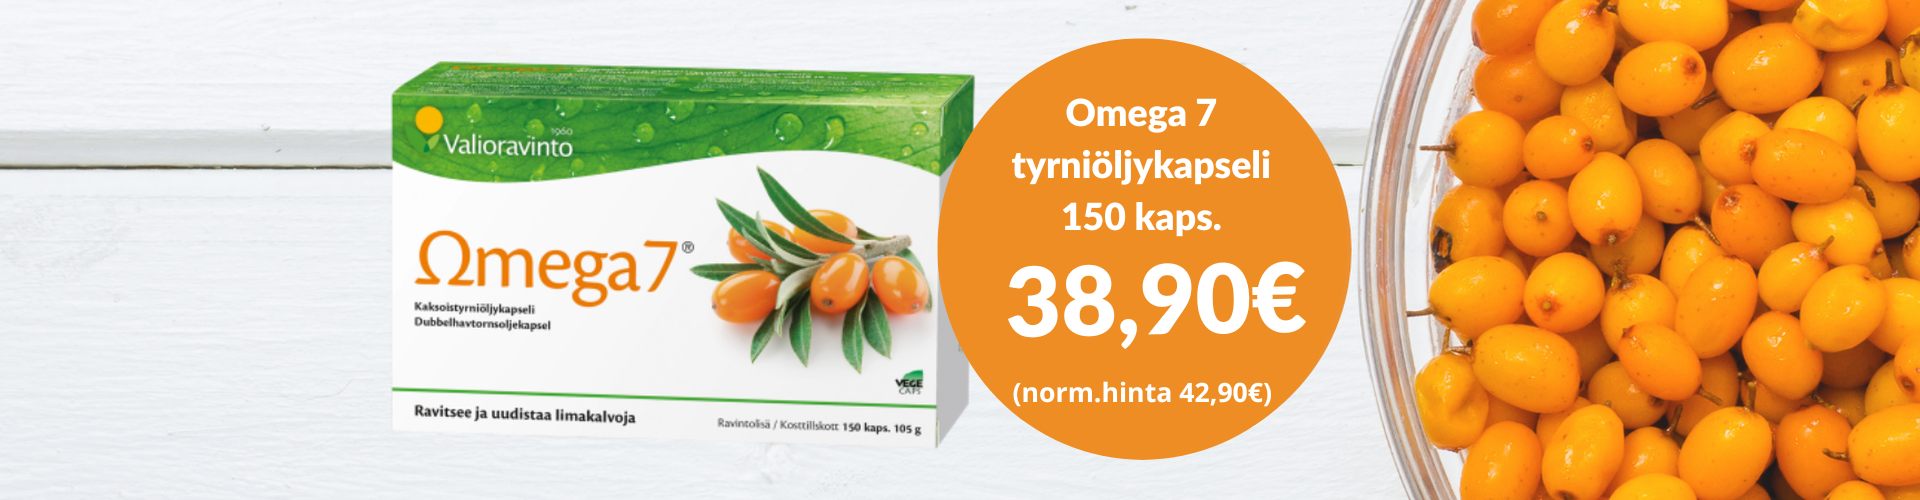 Omega7 Tyrniöljykapselit edulliseen hintaan!